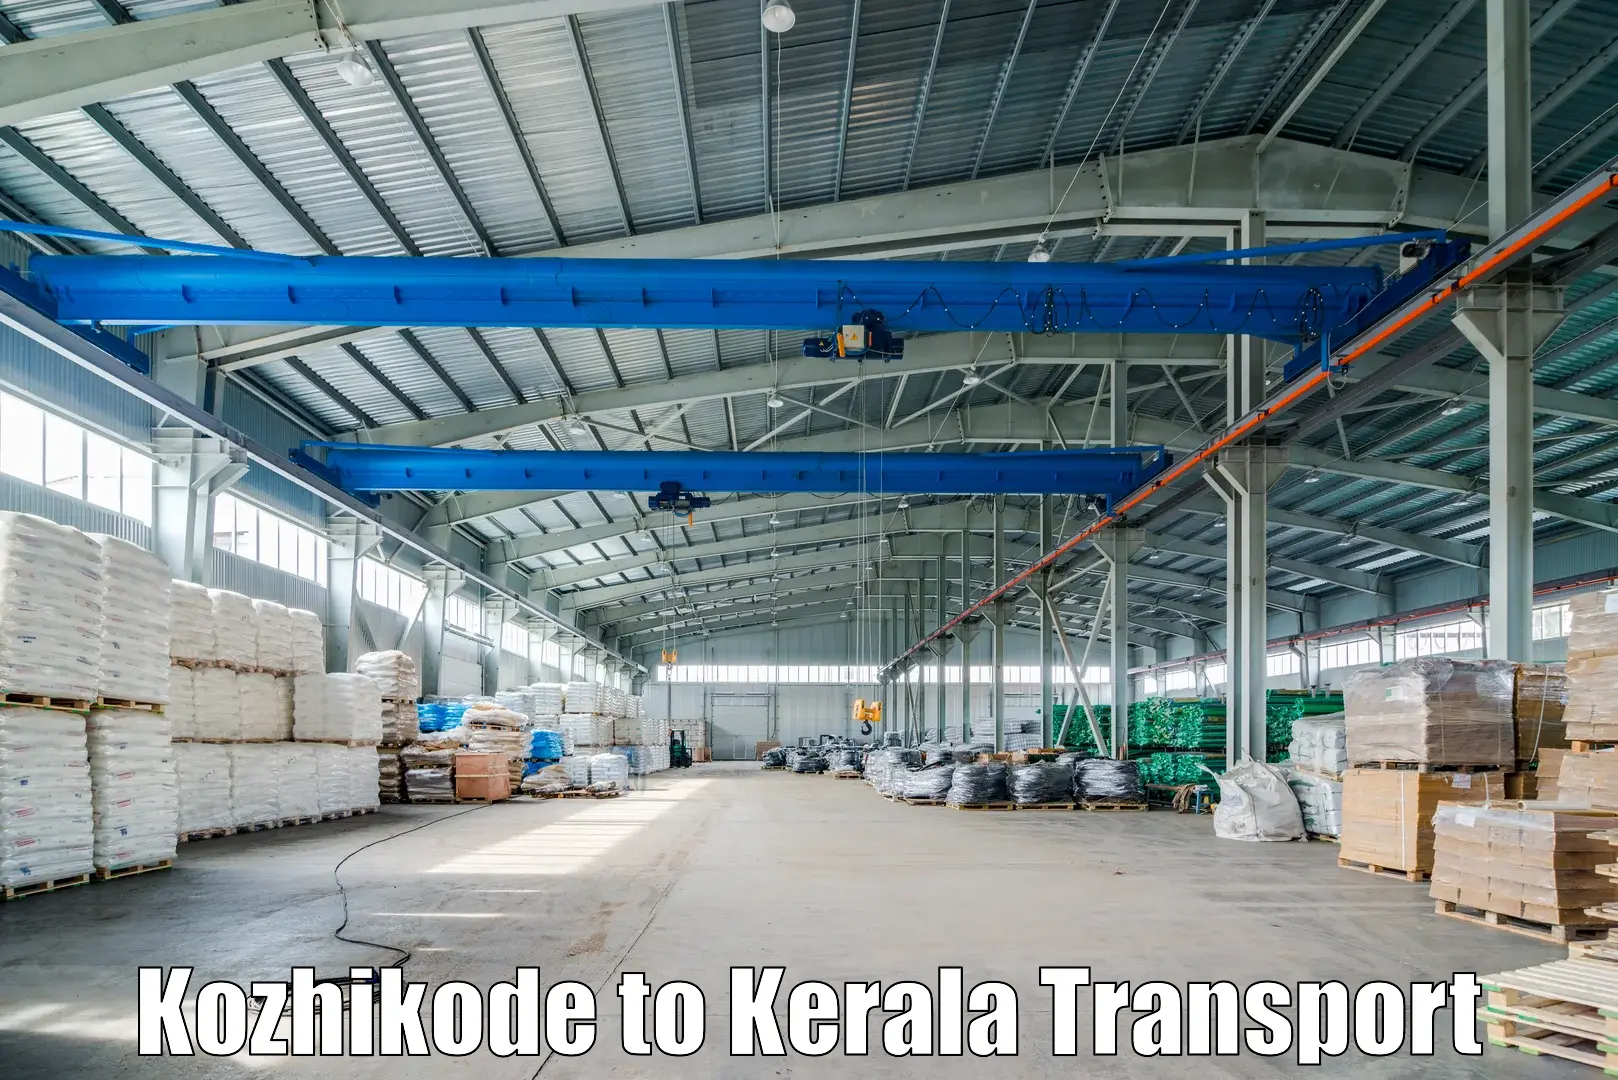 Transport in sharing Kozhikode to Kazhakkoottam